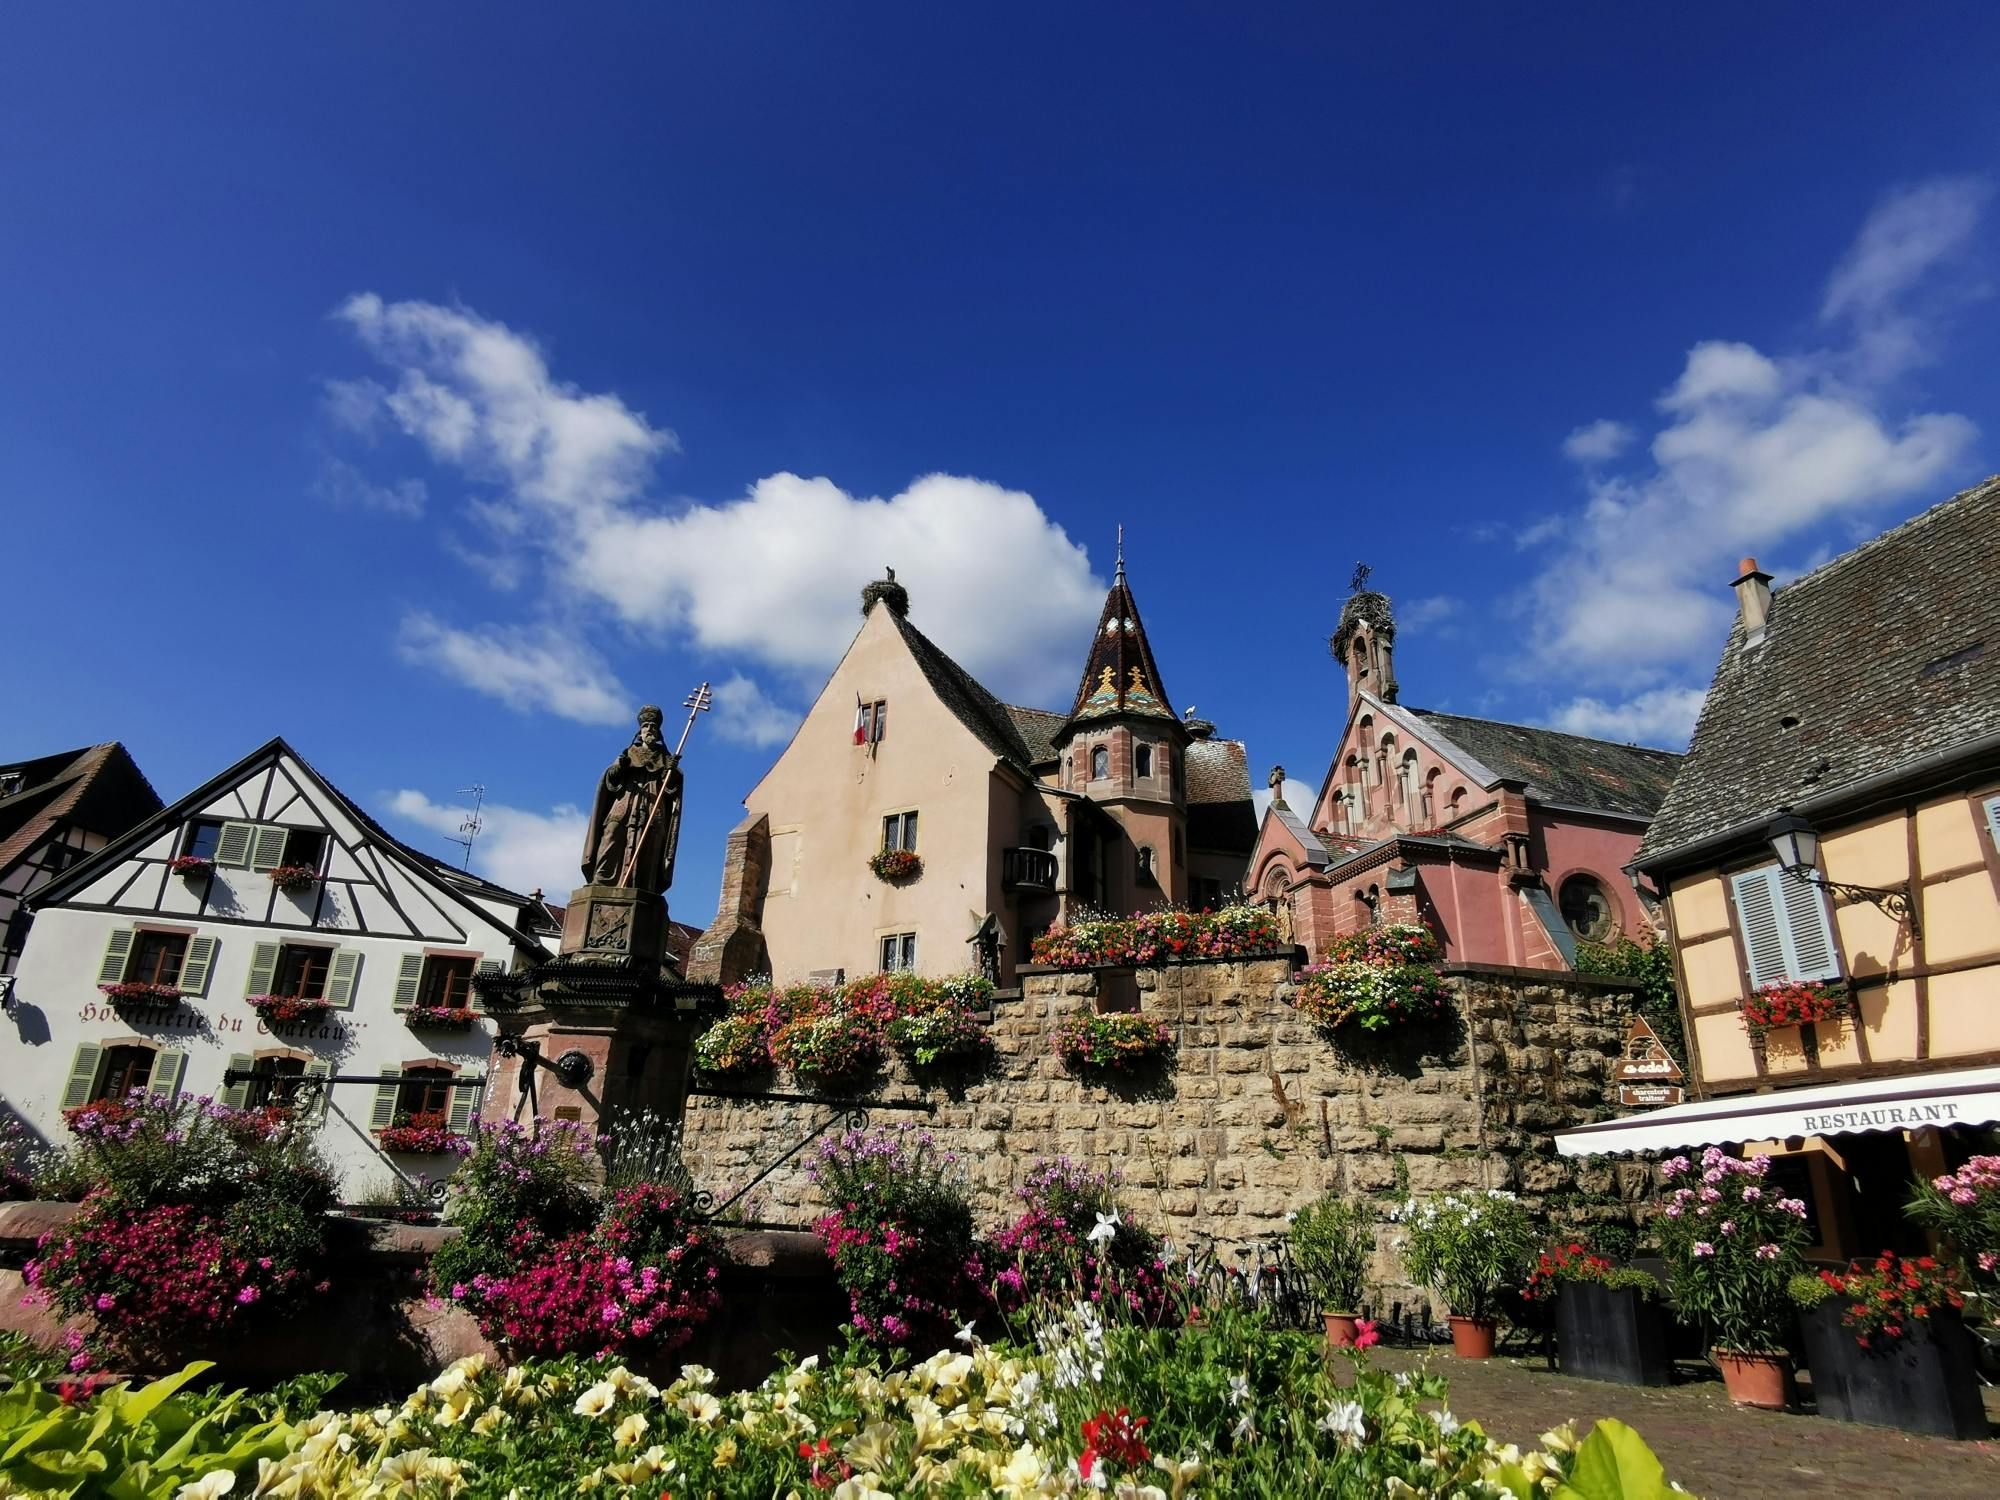 Excursão de meio dia à tarde pelas aldeias da Alsácia e degustação de vinhos